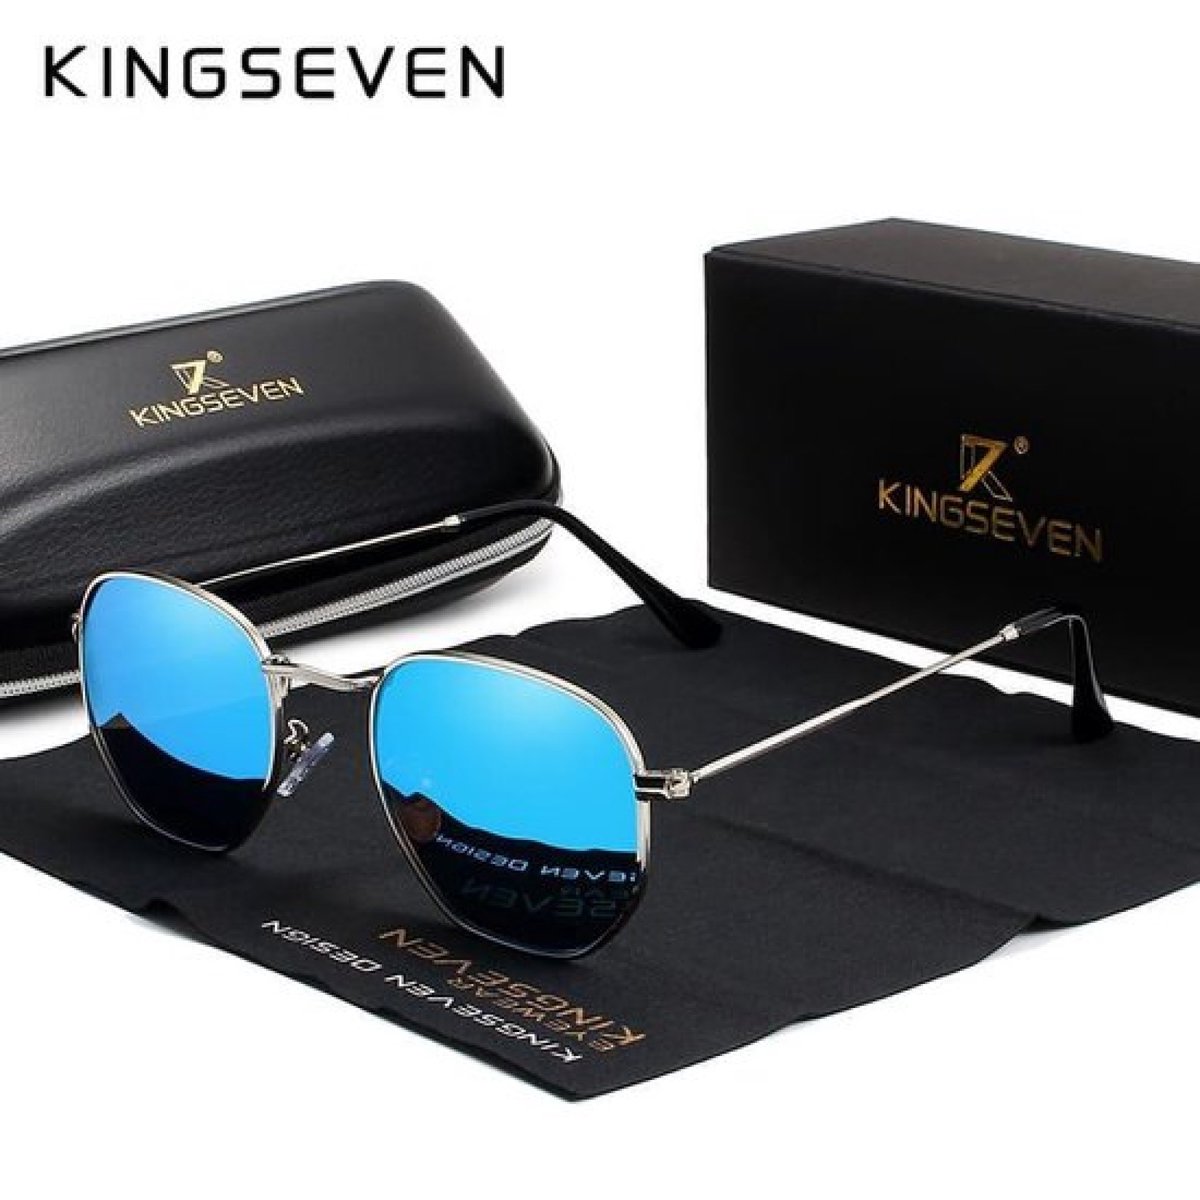 Kingseven Reflect - 2020 trend zonnebril met UV400 en polarisatie filter| Pilotenbril - Zilver Blauw